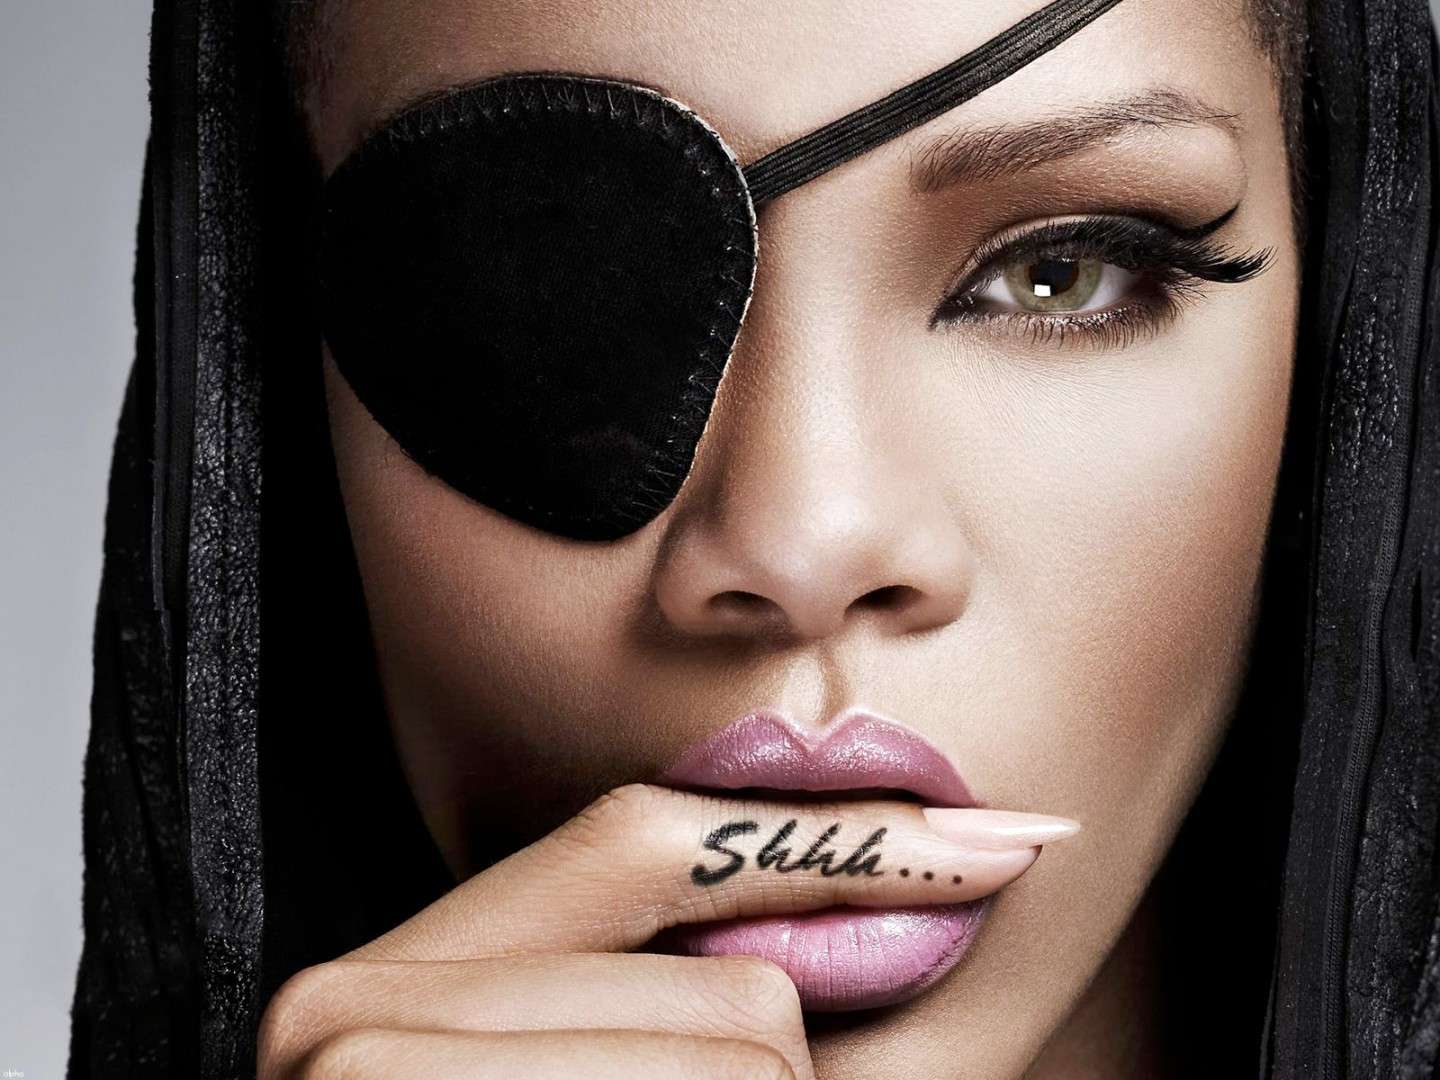 Tatuaggi di Rihanna: "Shh"